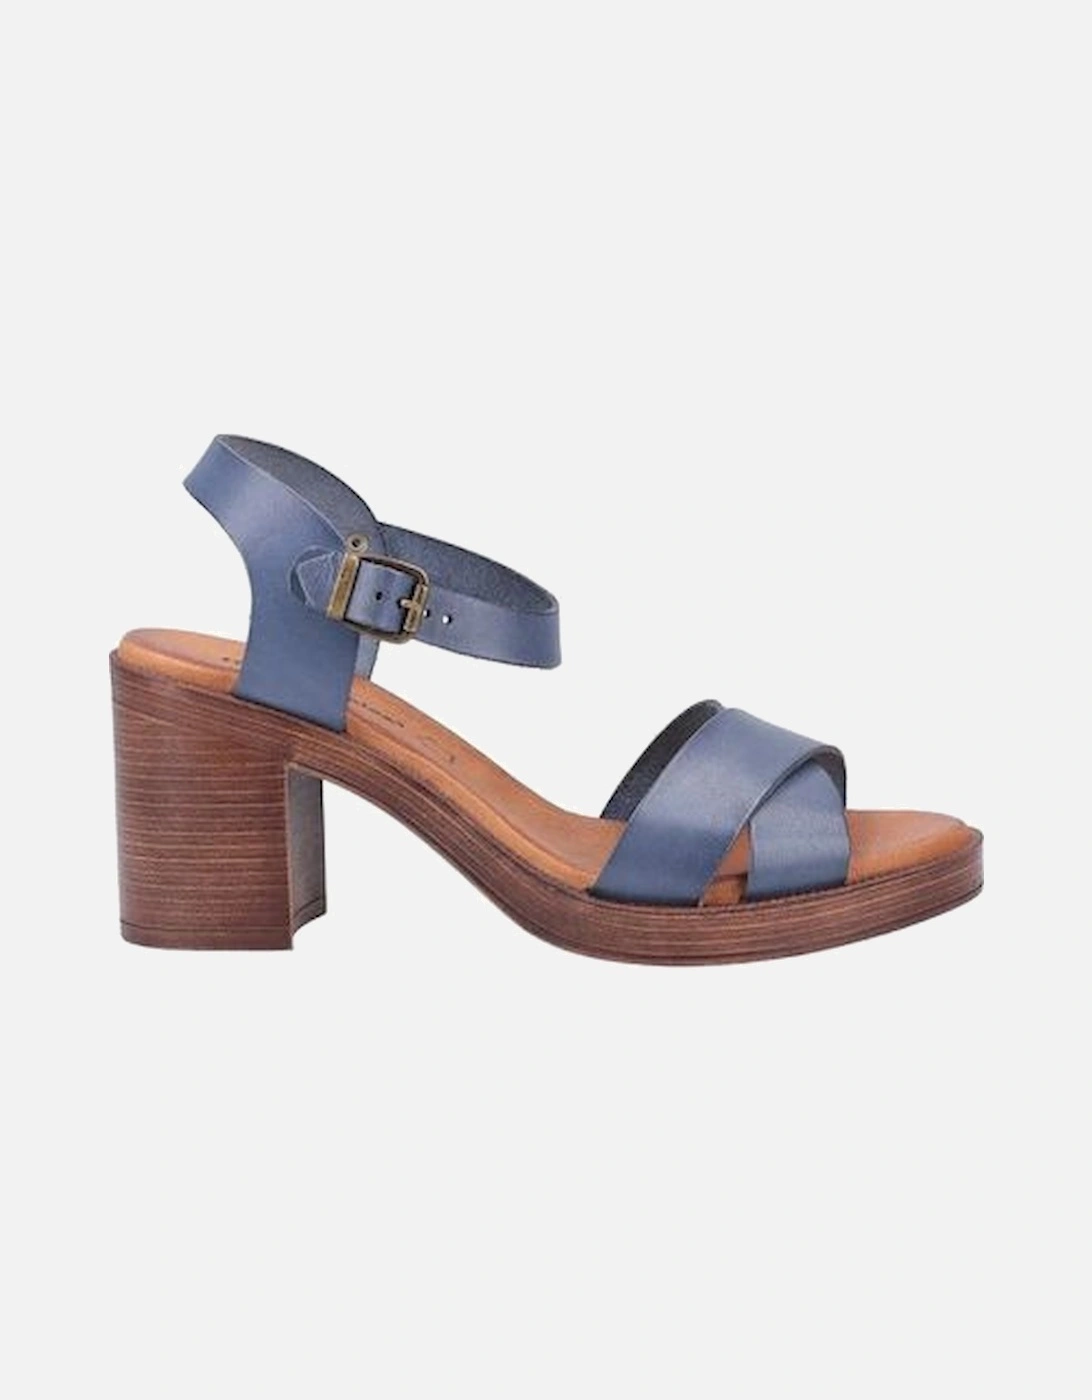 Georgia ladies blue sandals